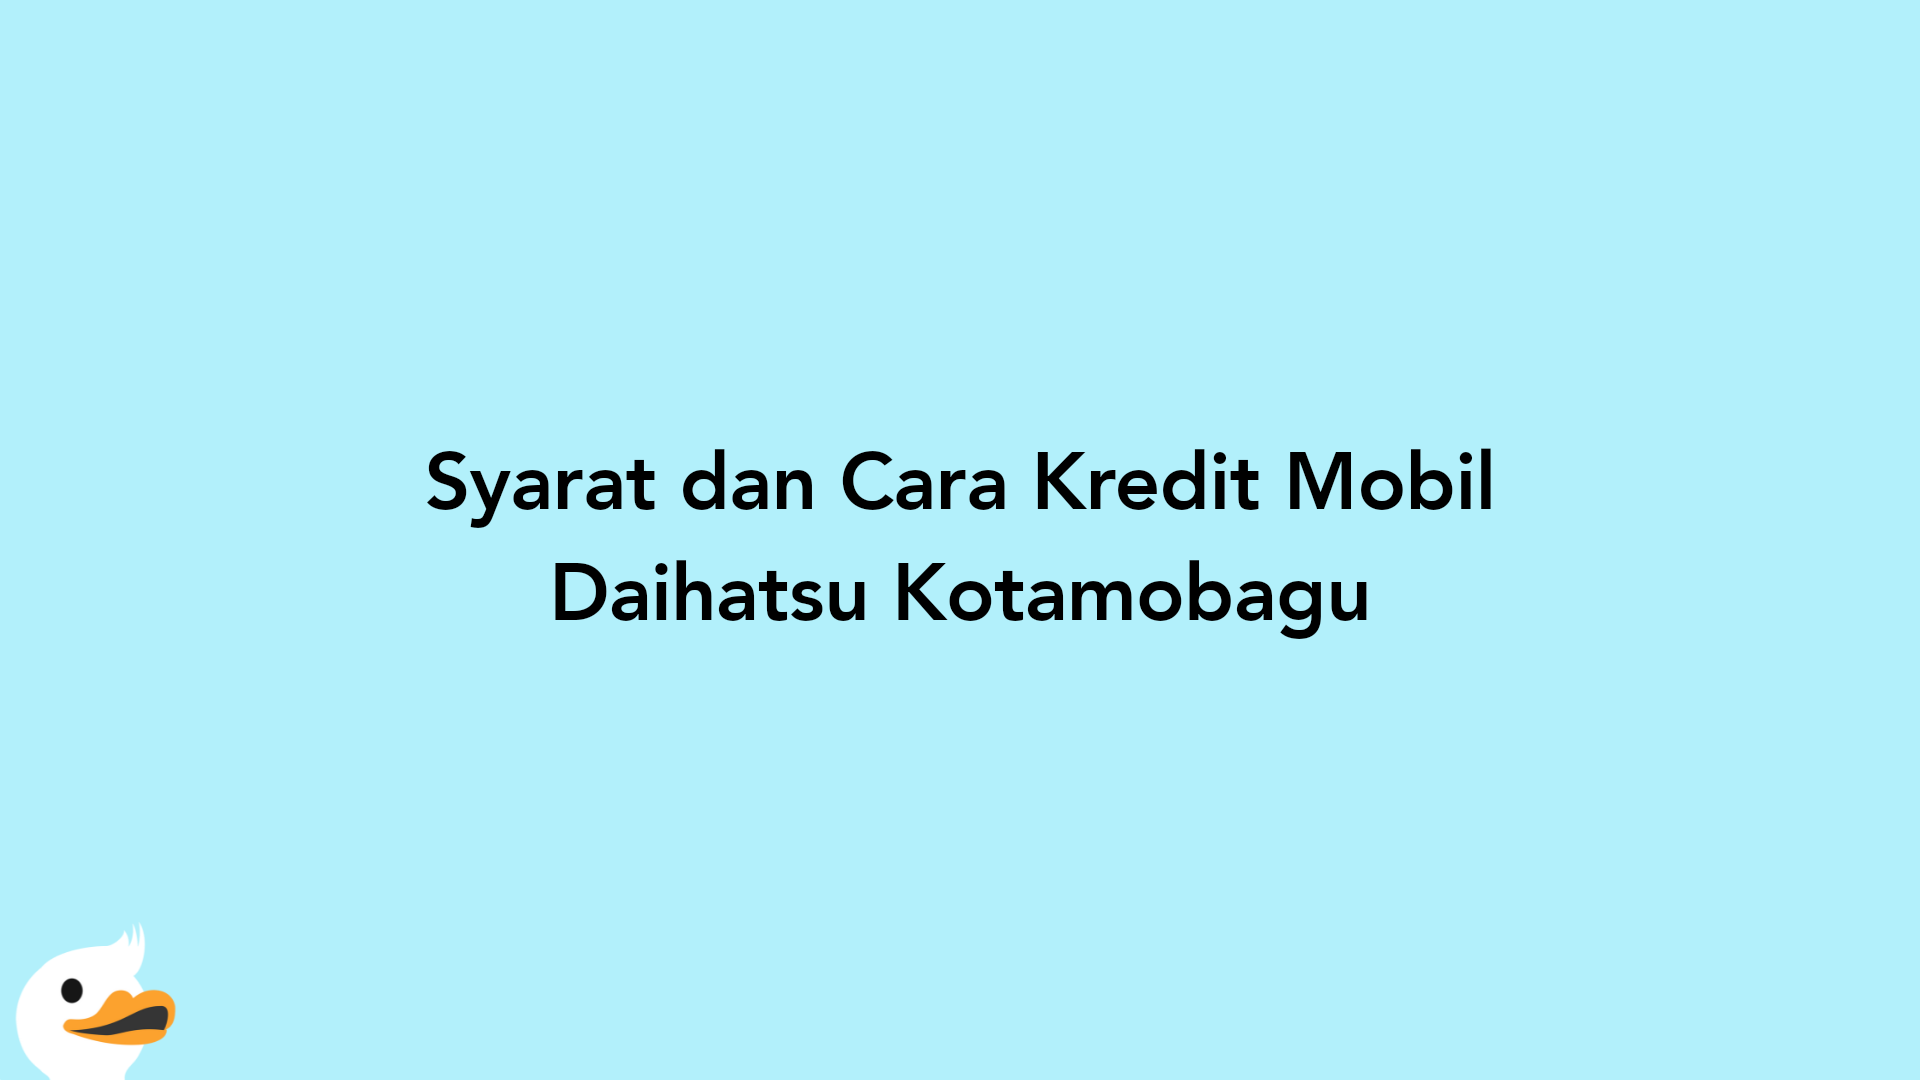 Syarat dan Cara Kredit Mobil Daihatsu Kotamobagu